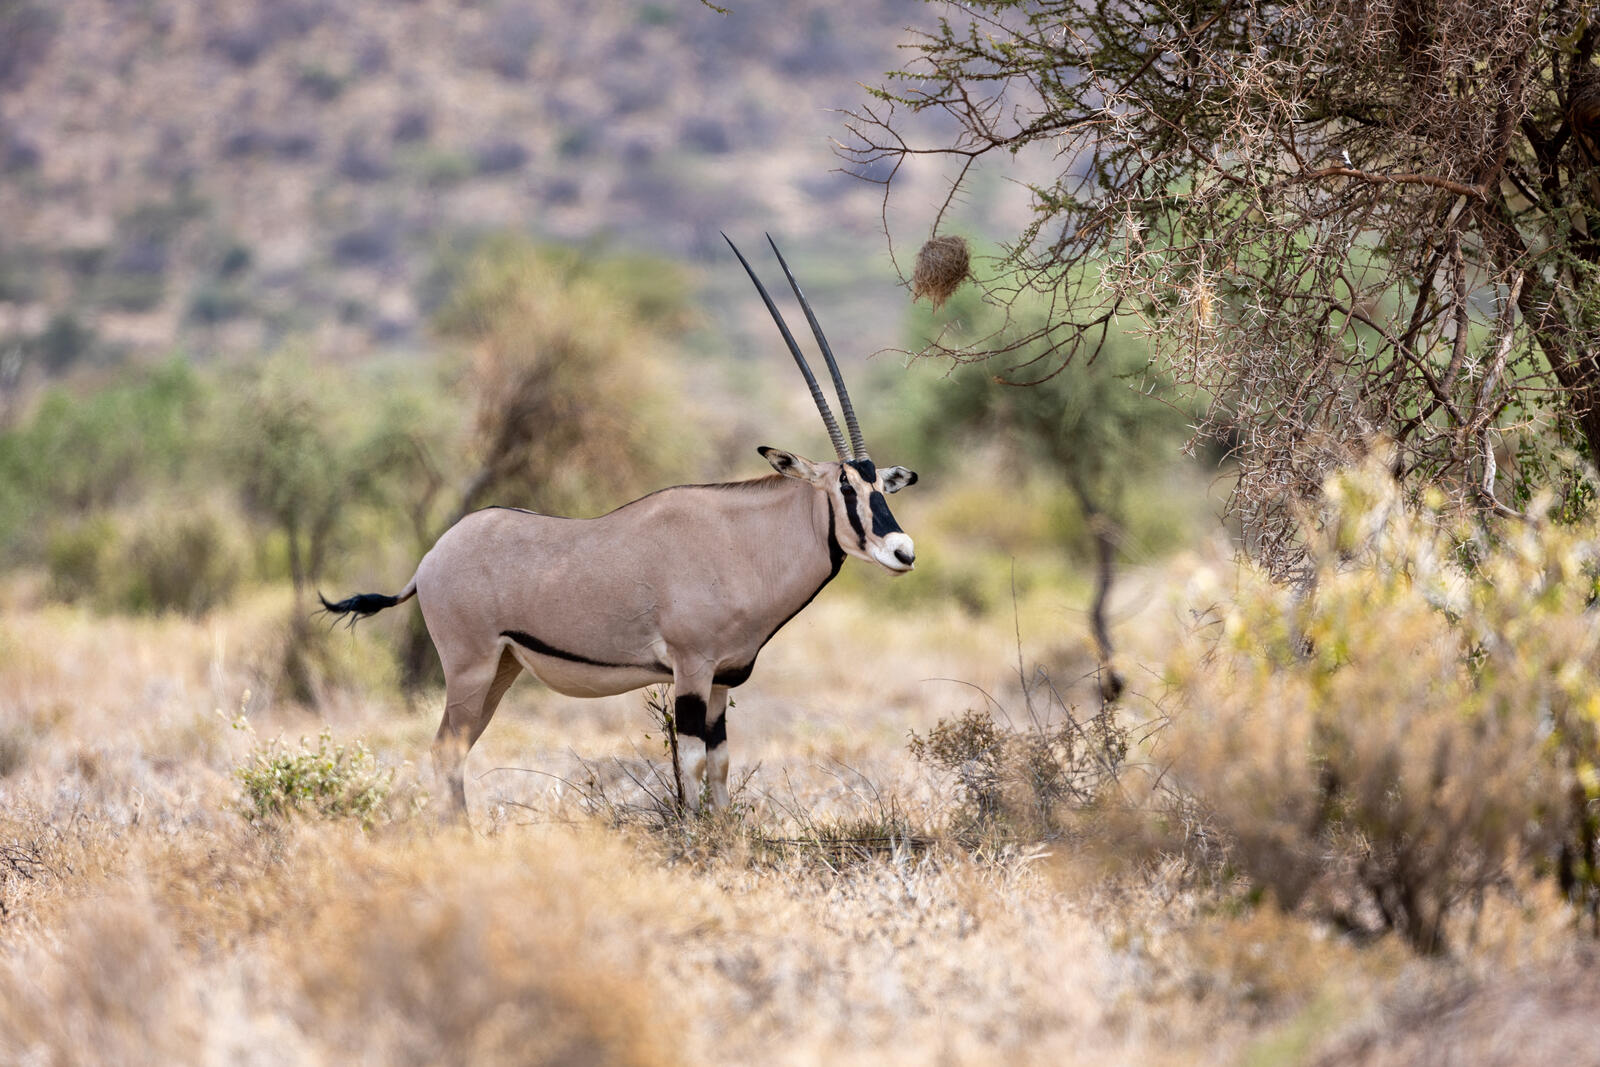 Free photo A gazelle walks on African soil